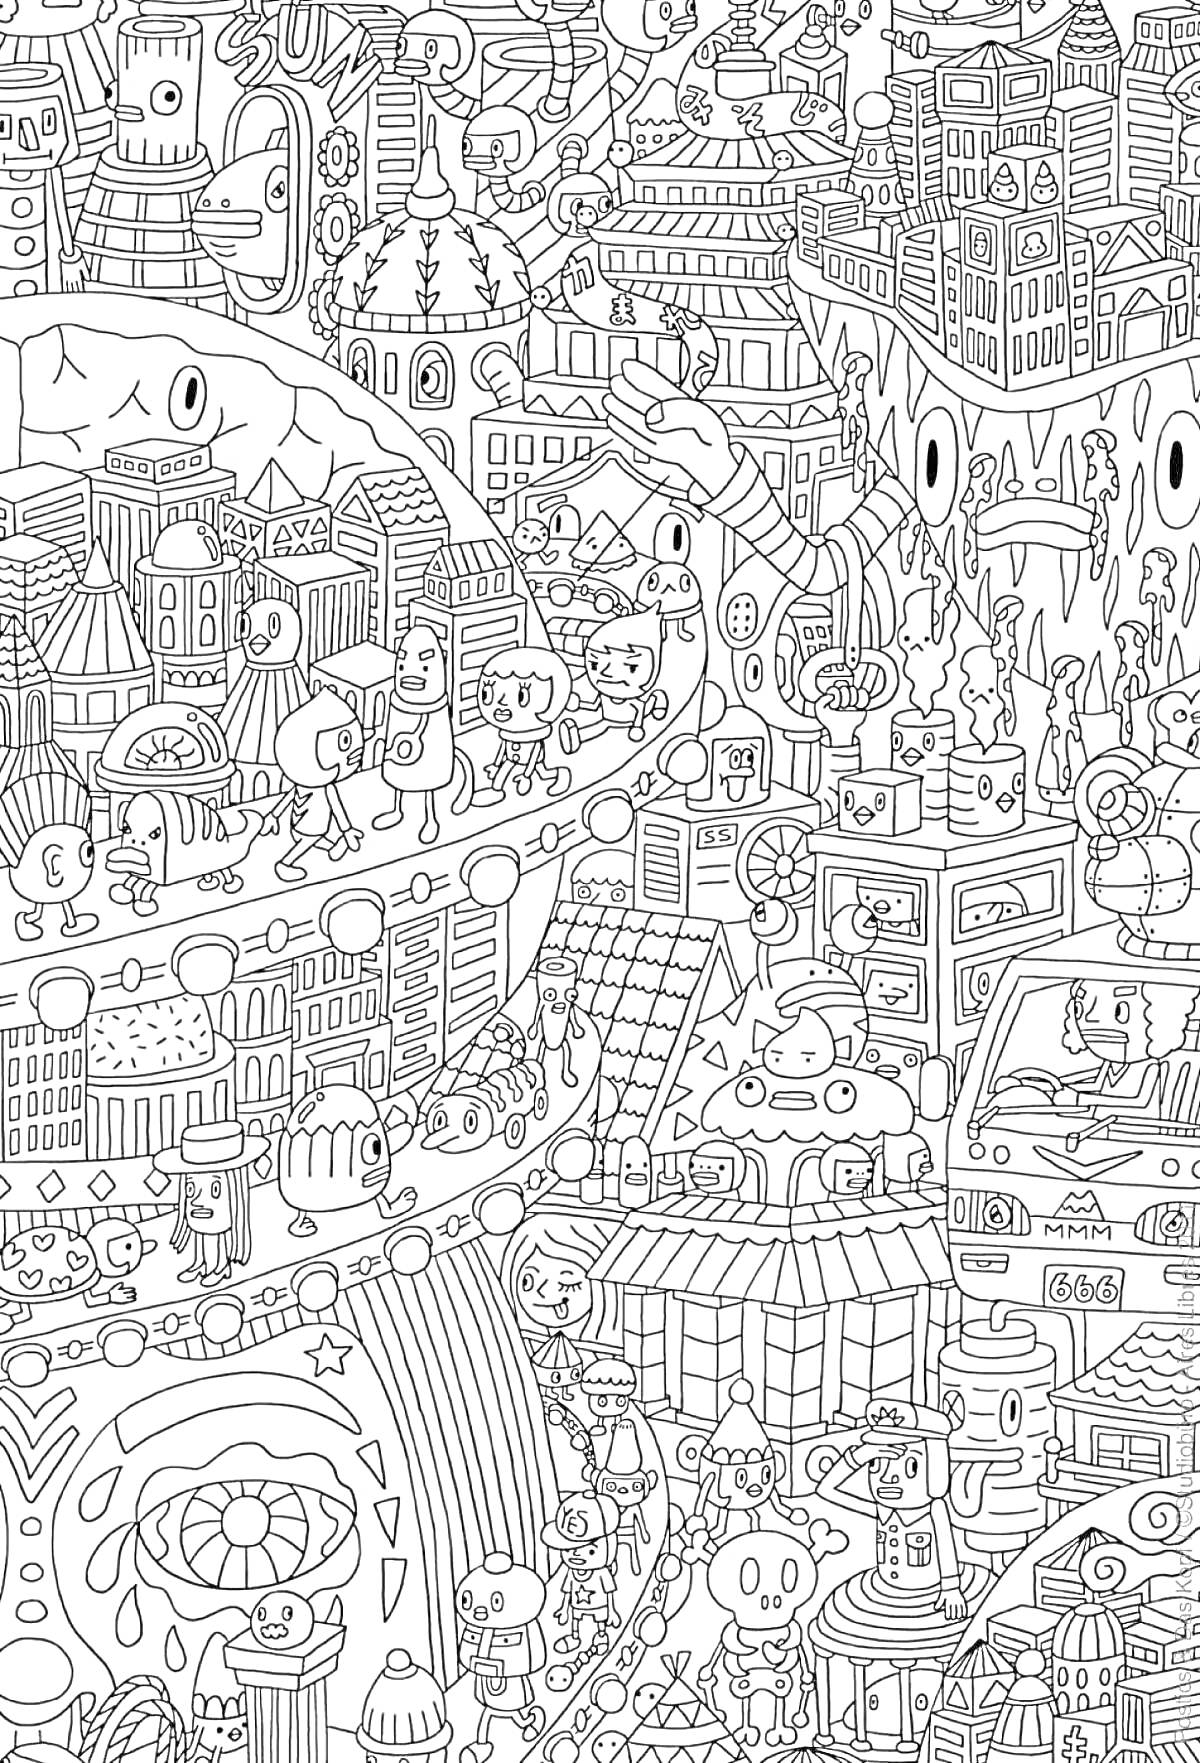 Раскраска Город из будущего с роботами, зданиями и машинами